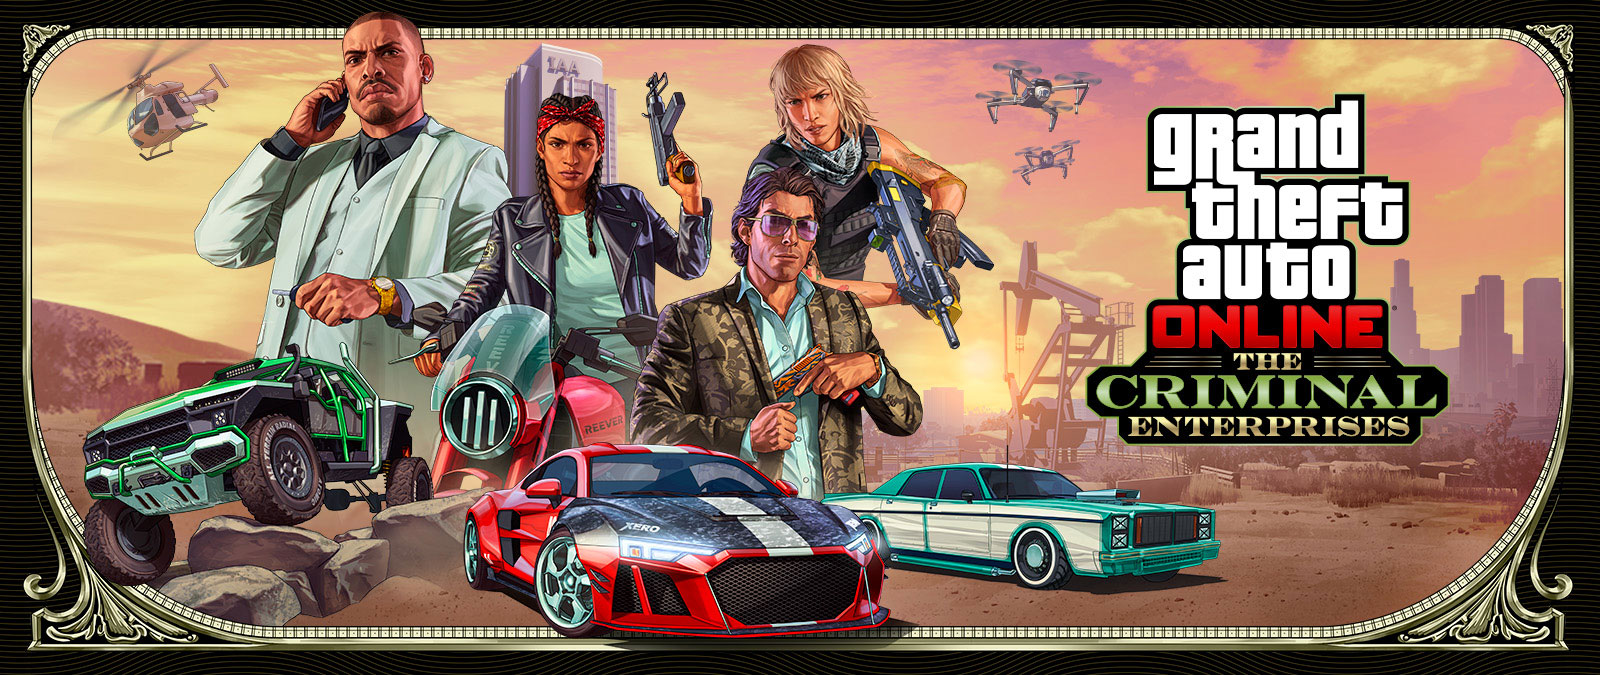 Grand Theft Auto Online: The Criminal Enterprises. Три стильных автомобиля гоняются на переднем плане, над ними позируют четыре персонажа.